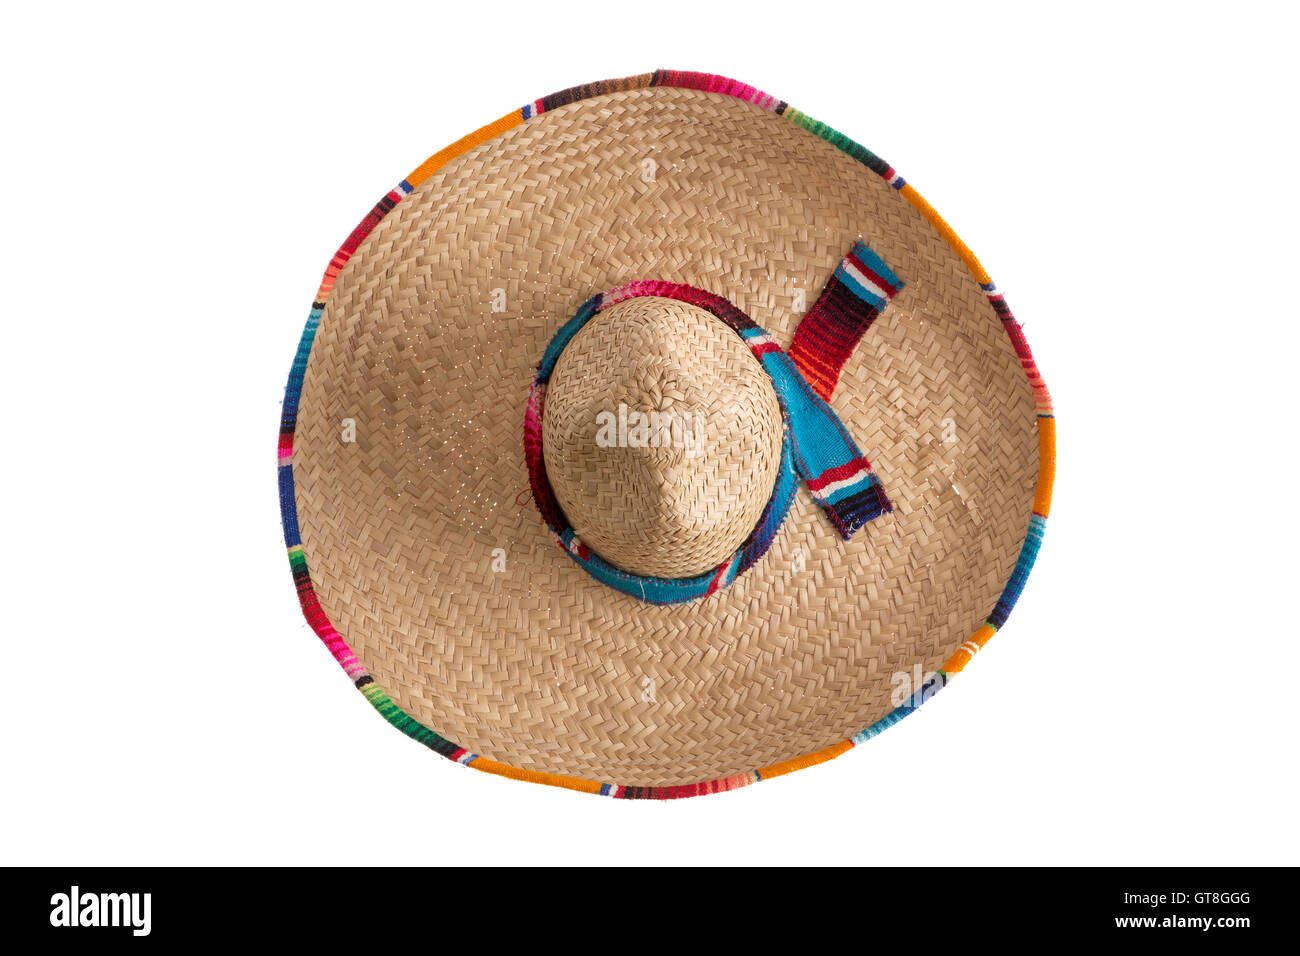 Überraschung - Was verbirgt sich unter der Breite Krempe des traditionellen Sombrero-Hut, symbolisch für Mexiko, Reisen und Tourismus, über Kopf Stockfoto